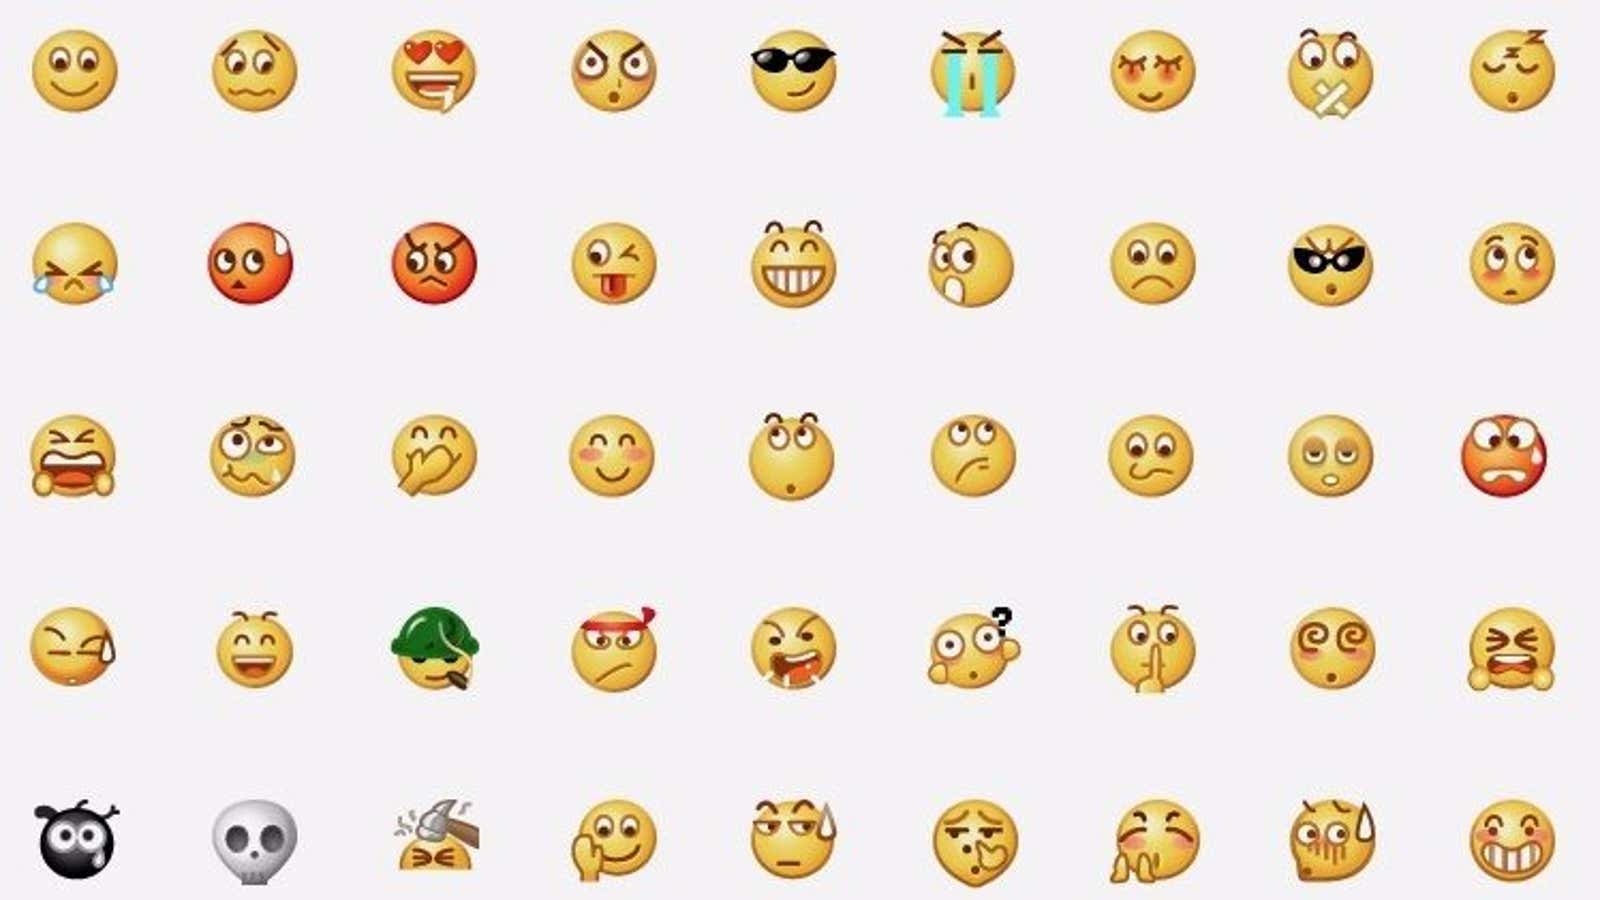 Emoji, WeChat-style.